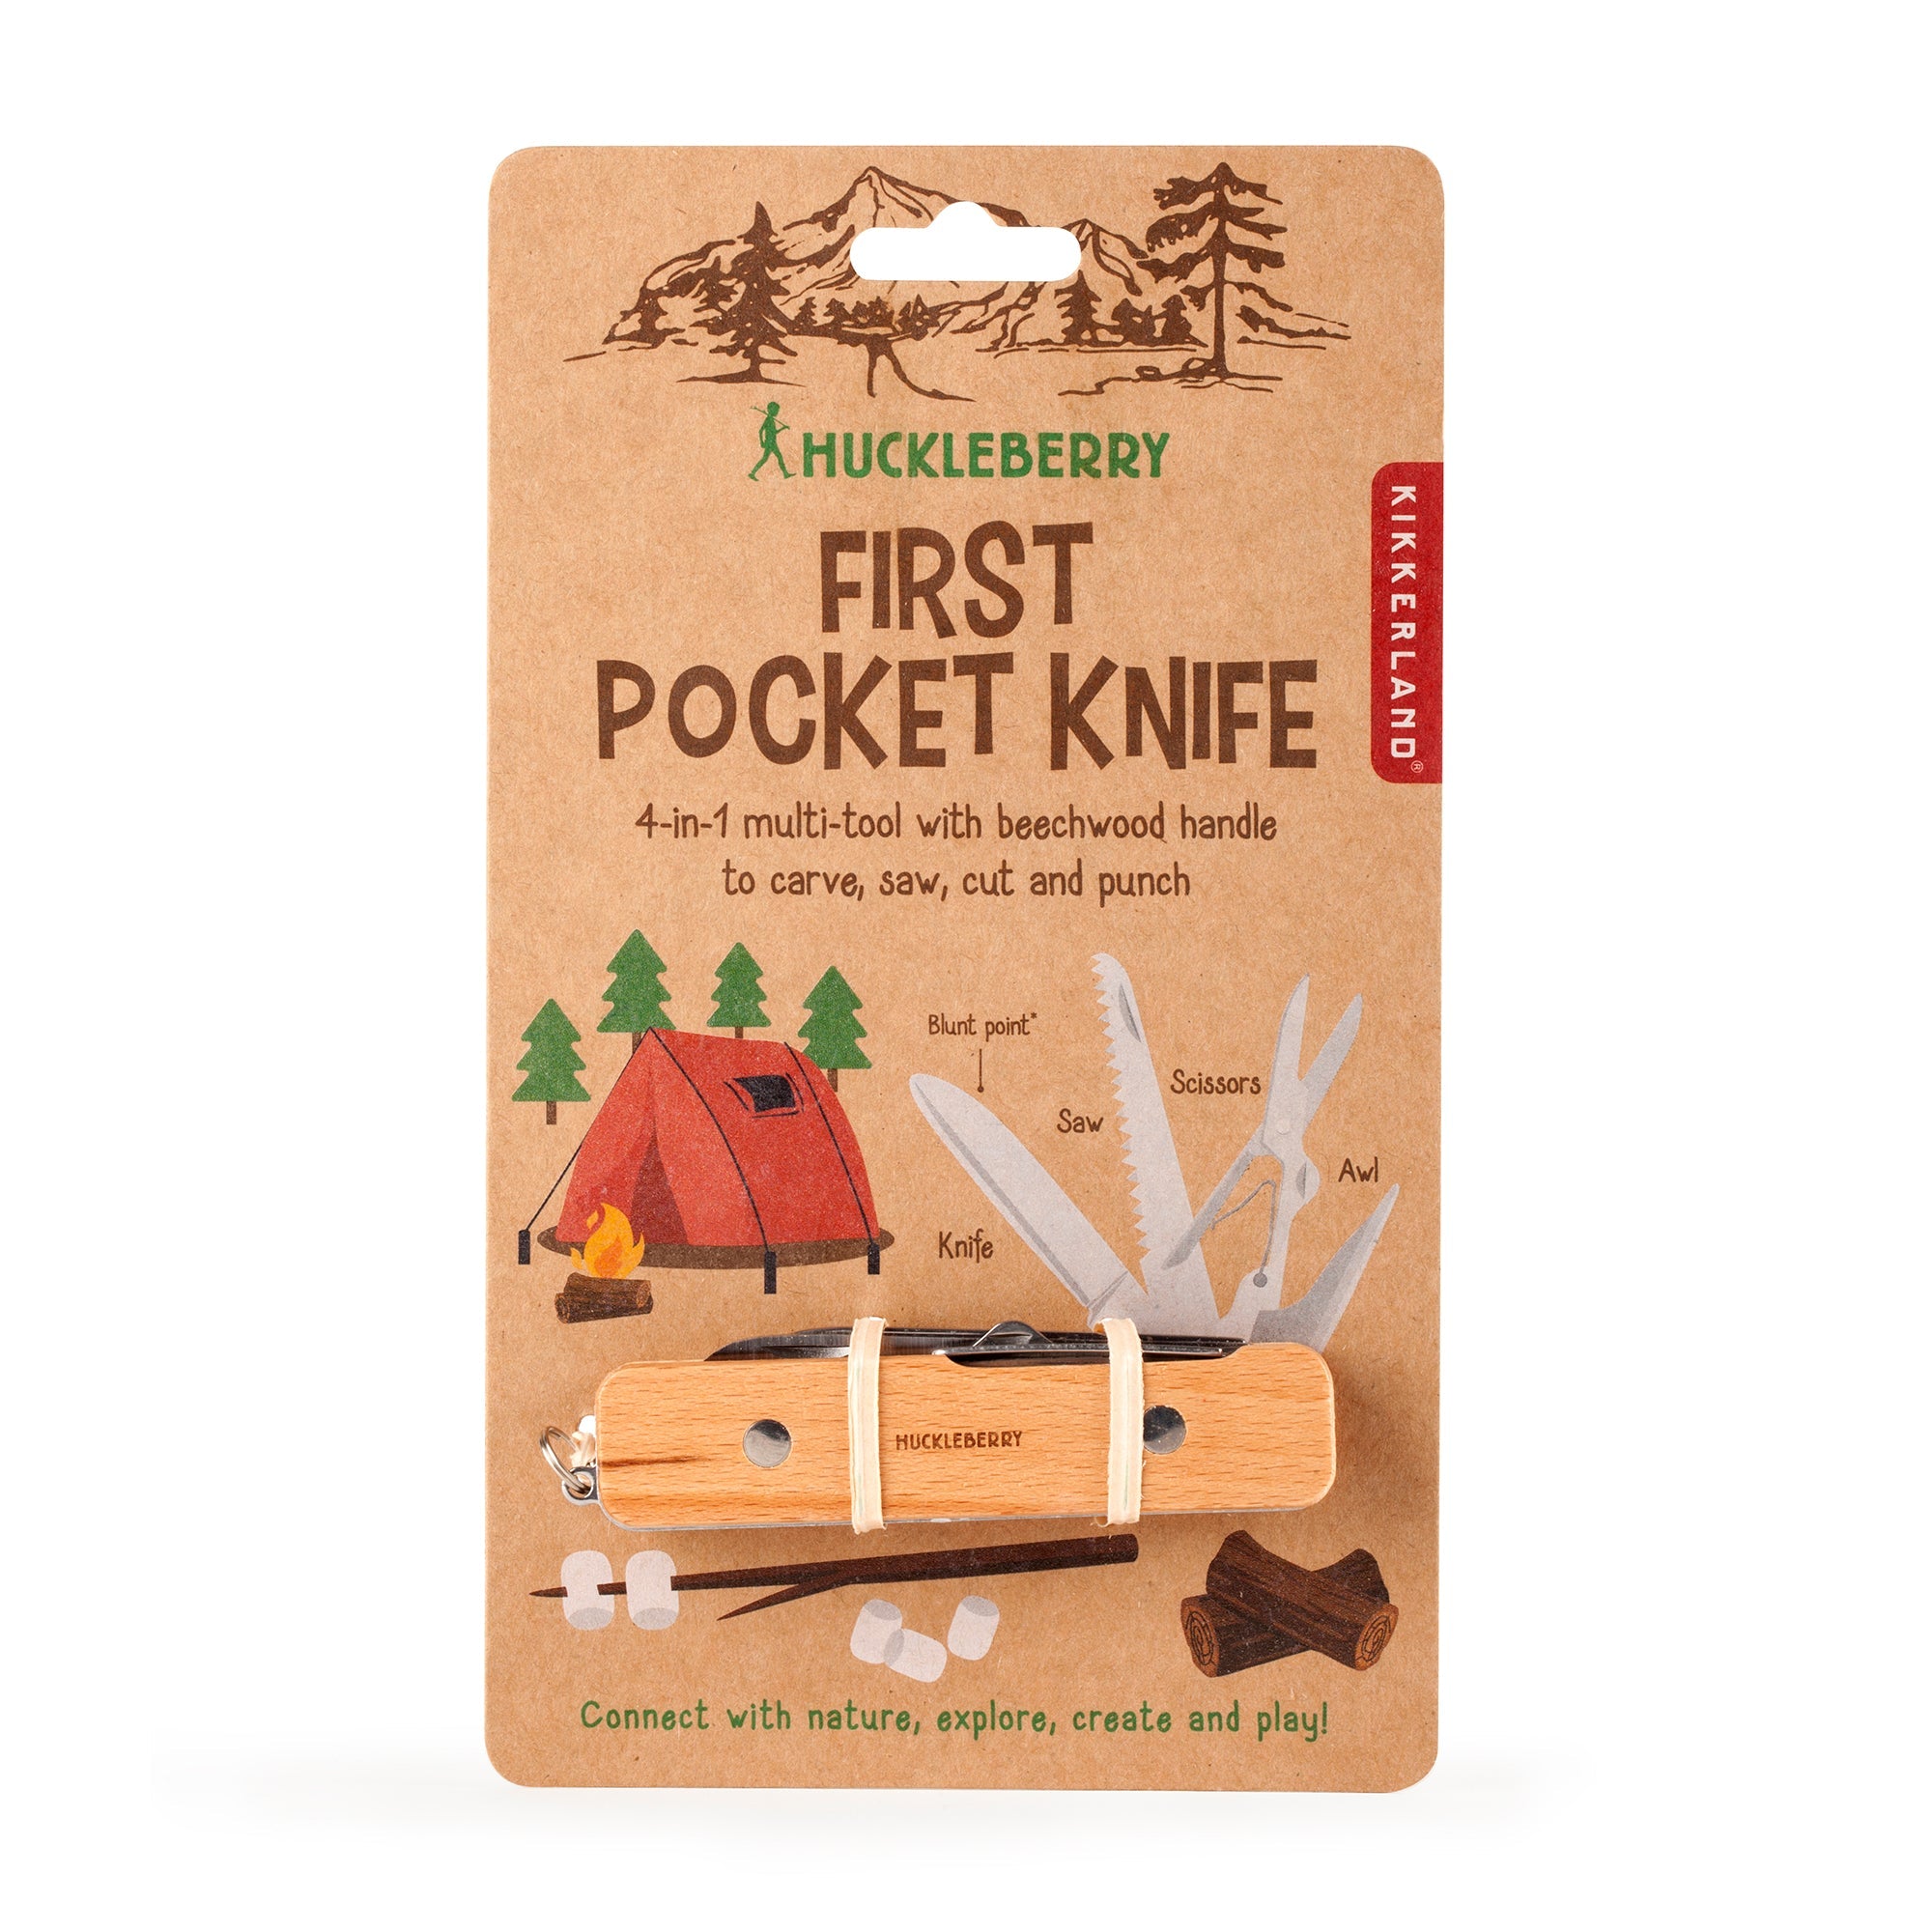 Kikkerland Huckleberry Pocket Knife –  First Pocket Knife for Kids